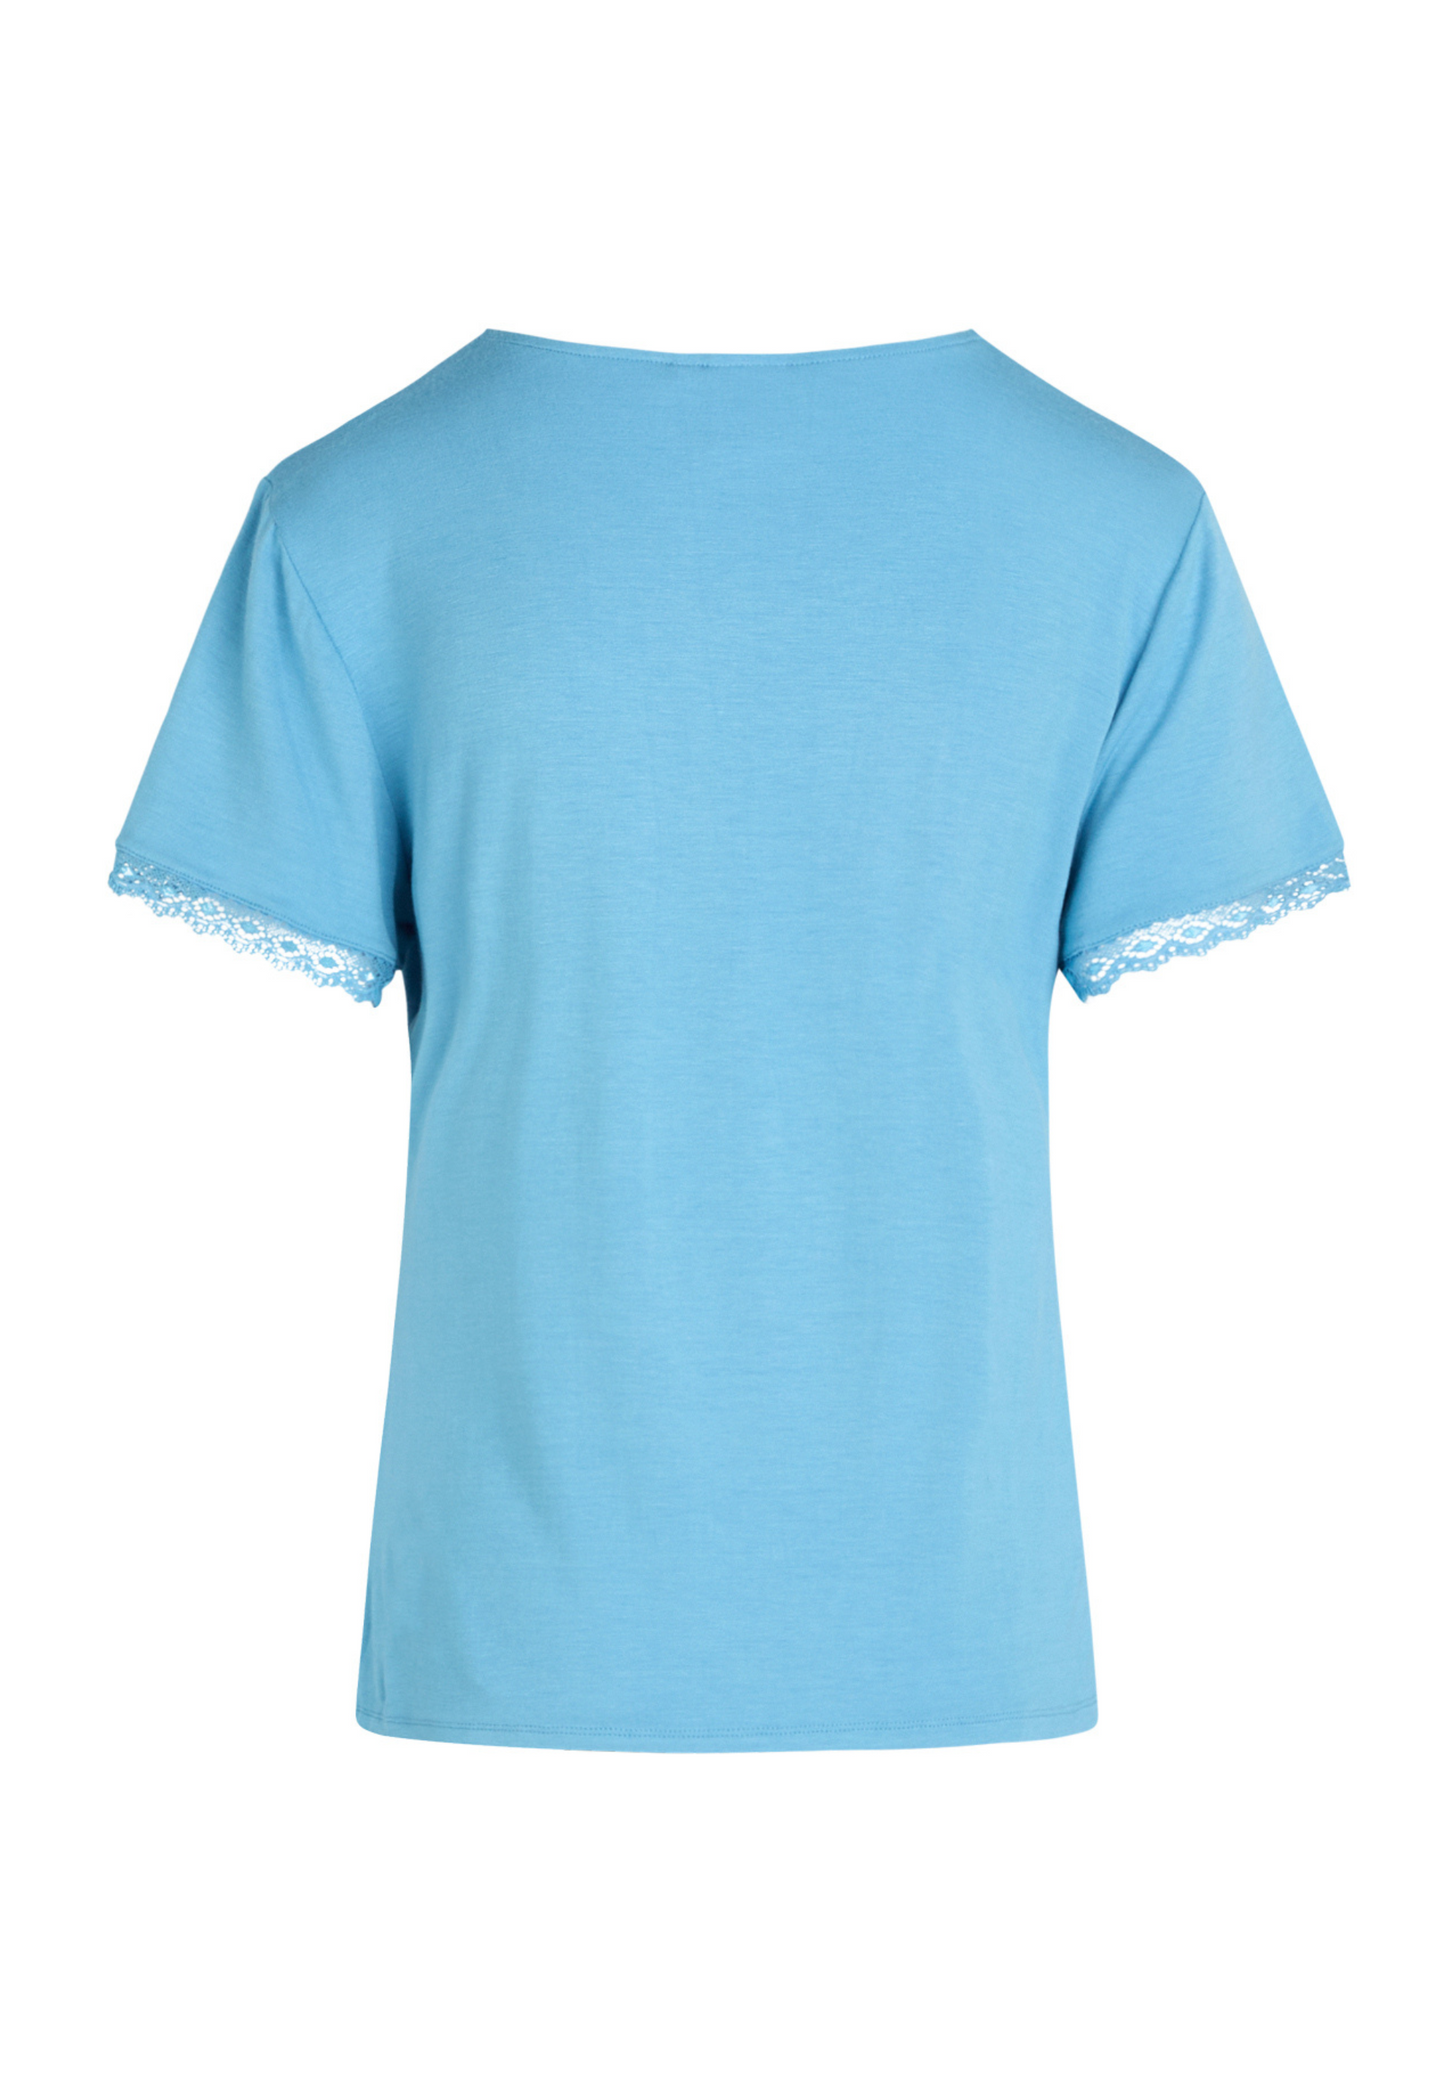 Jordan kortærmet t-shirt blå